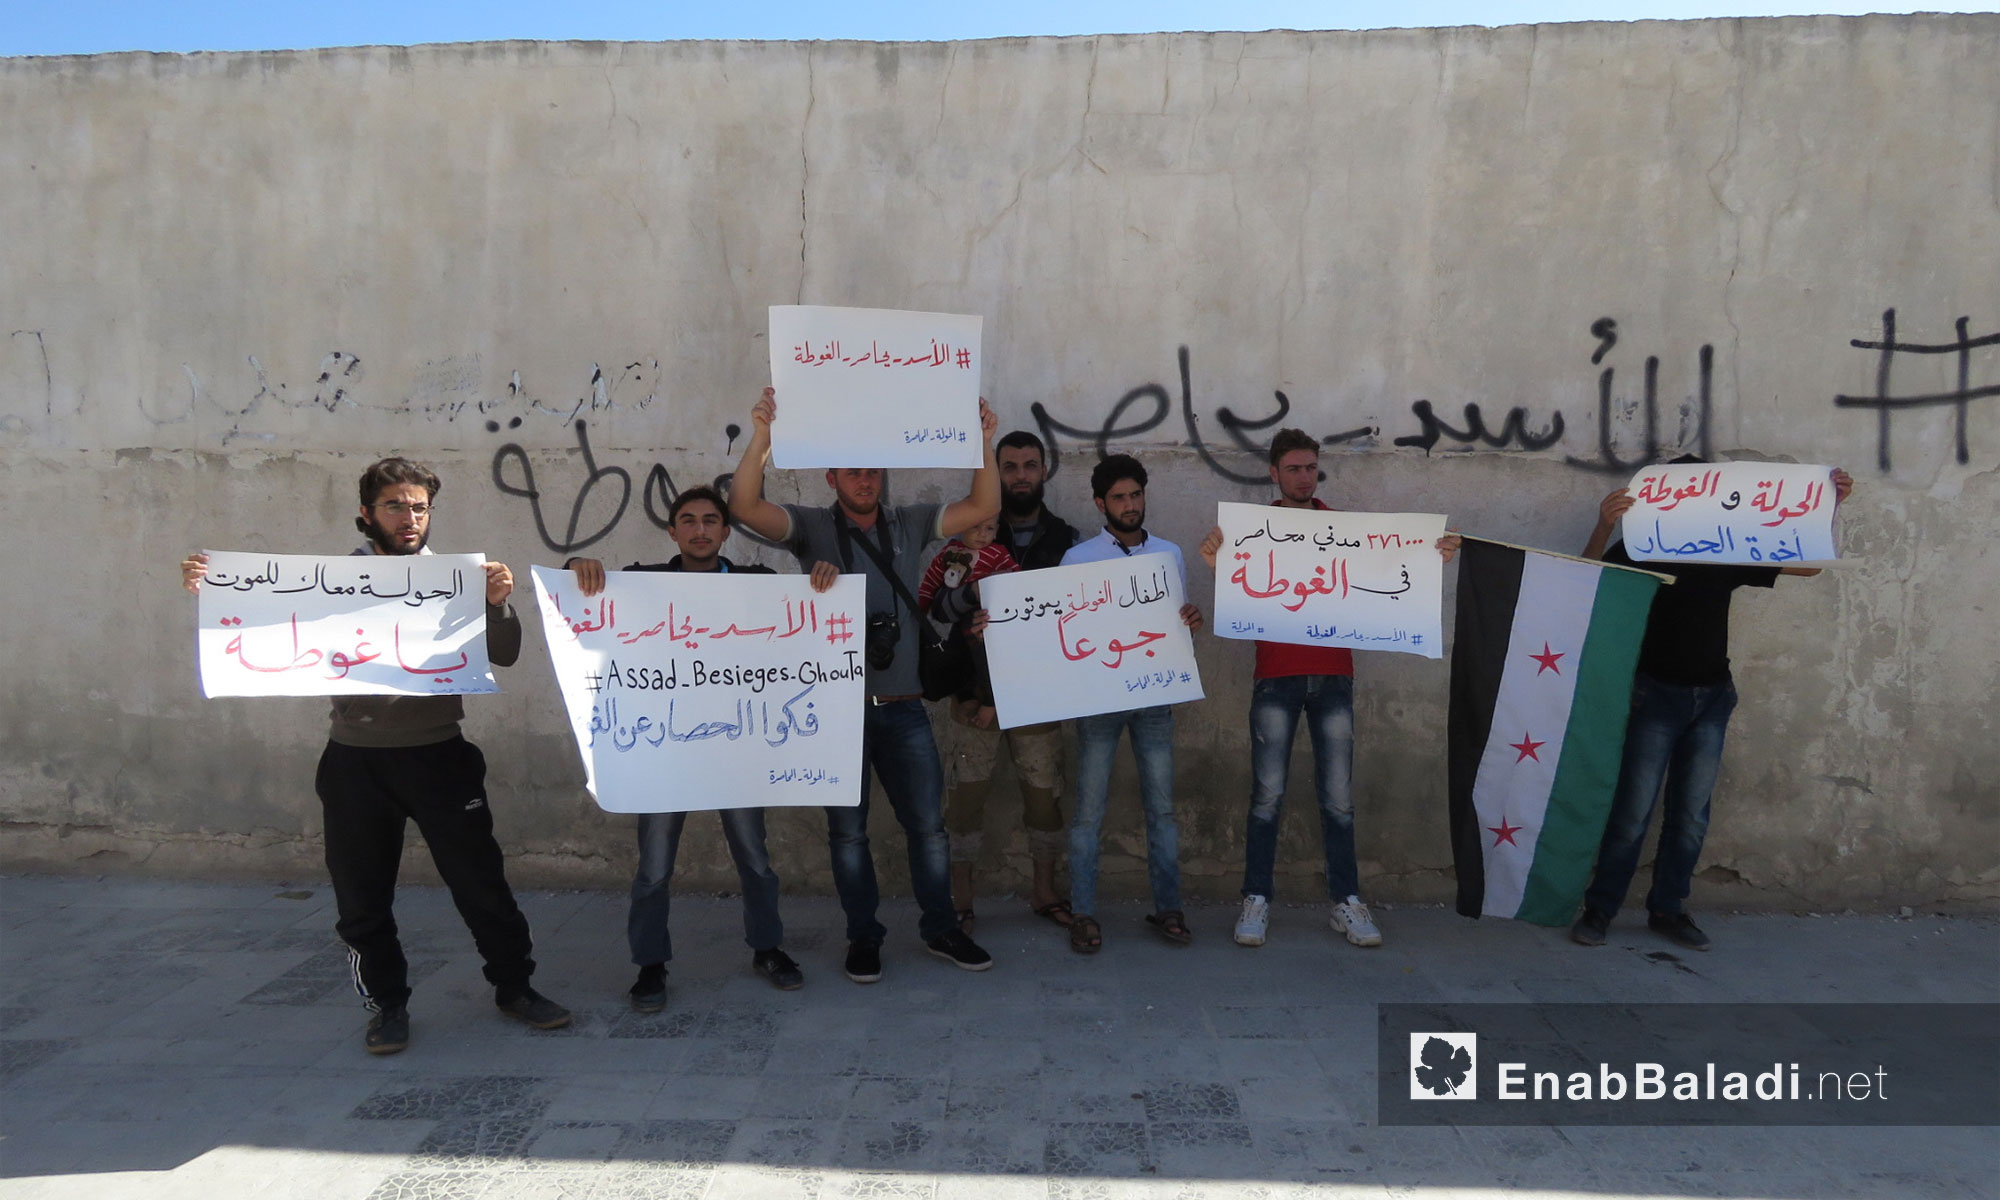 وقفة تضامنية مع أهالي الغوطة الشرقية من الحولة المحاصرة بريف حمص الشمالي -  27 تشرين الأول 2017 (عنب بلدي)